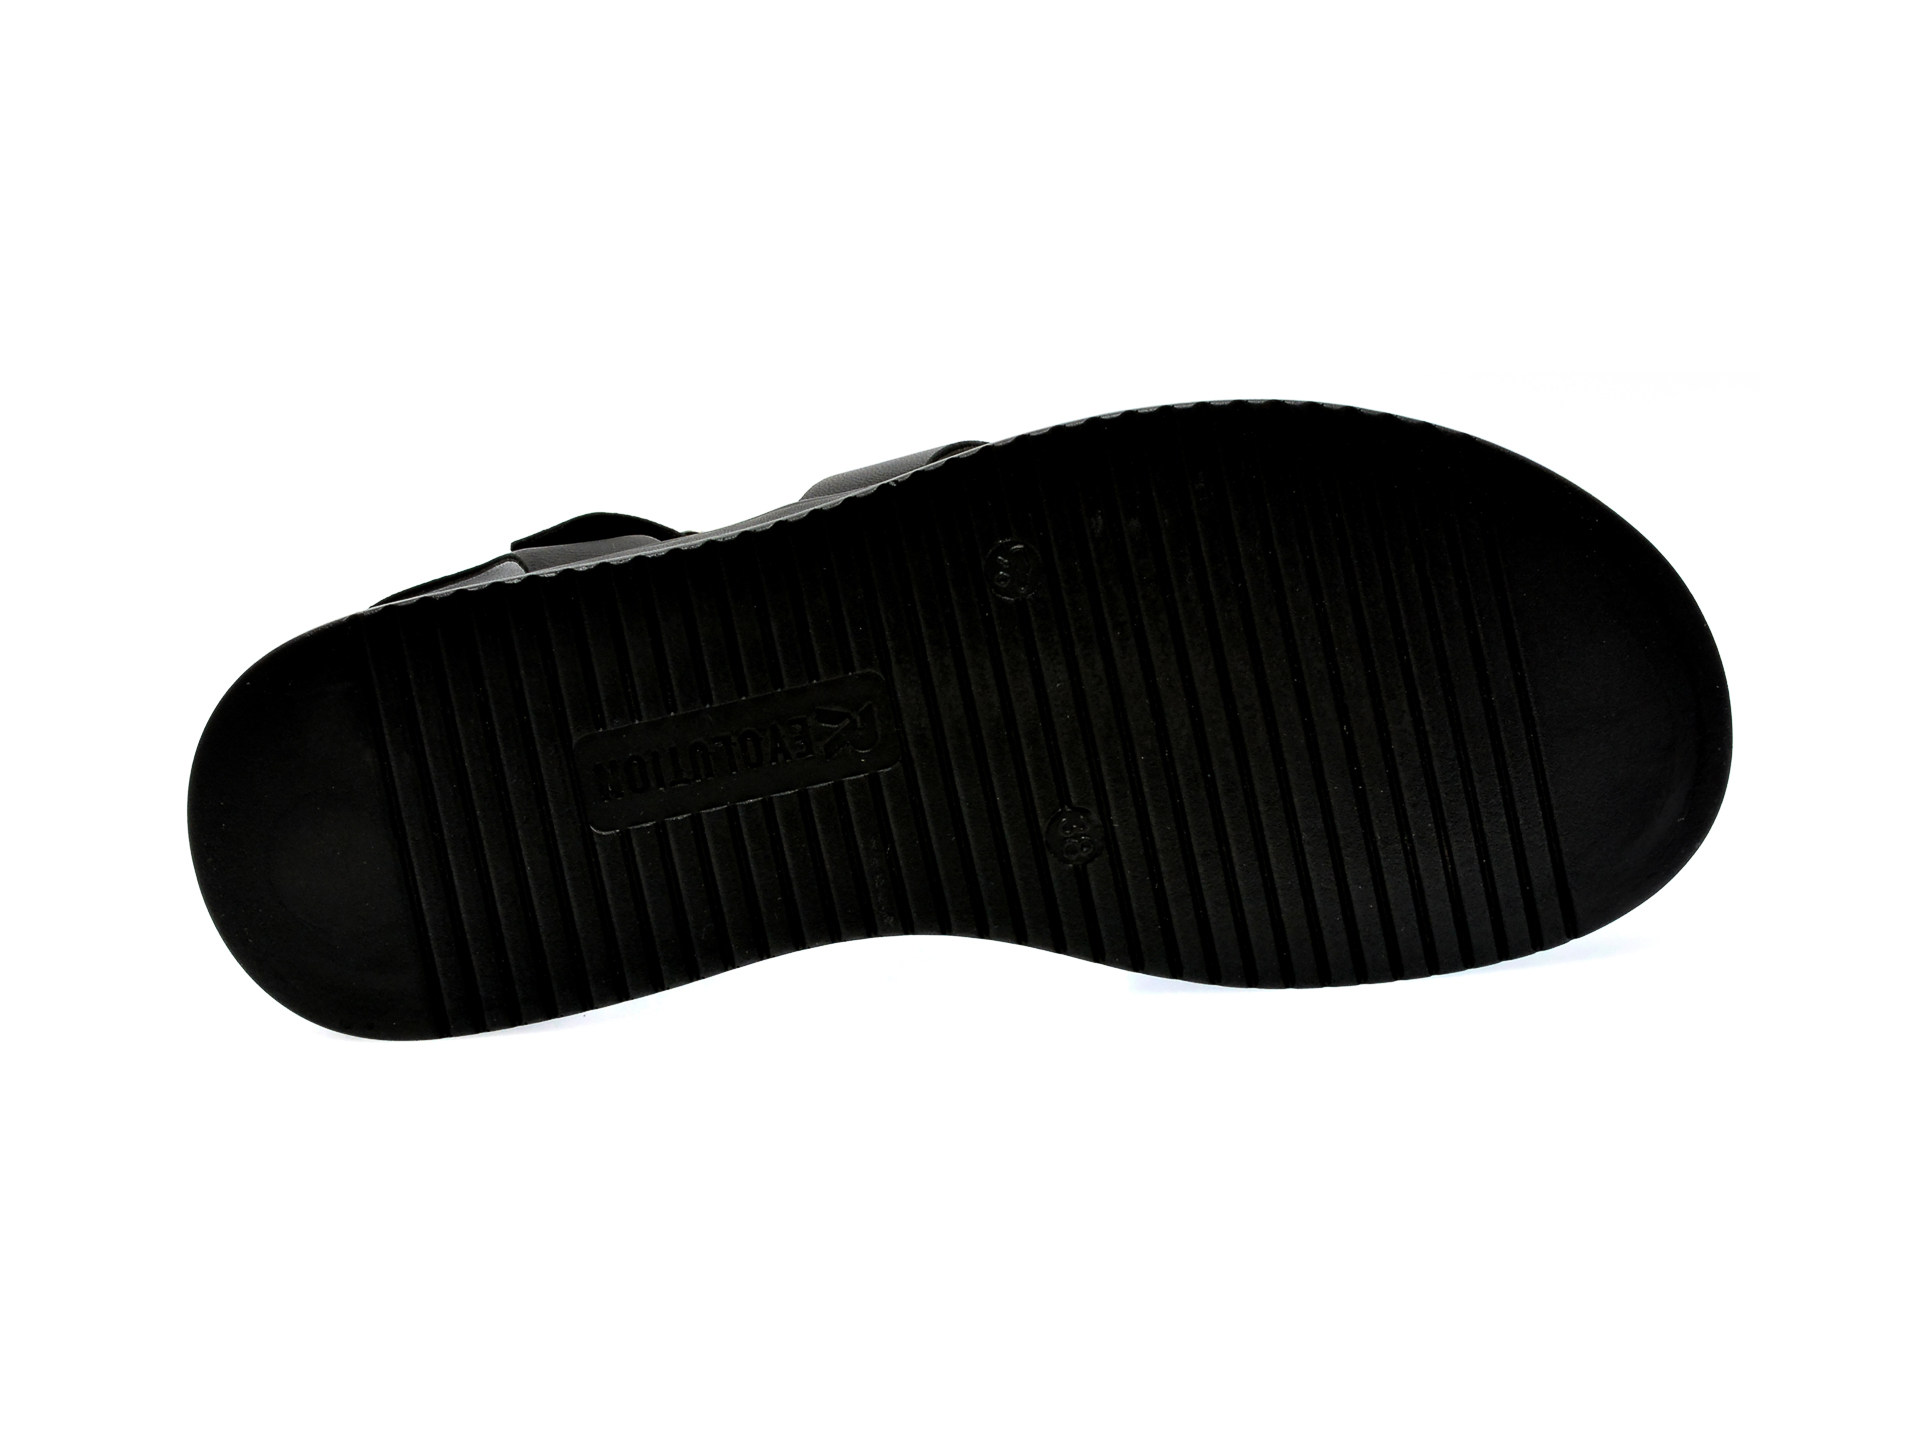 Sandale RIEKER negre, W0804, din piele naturala